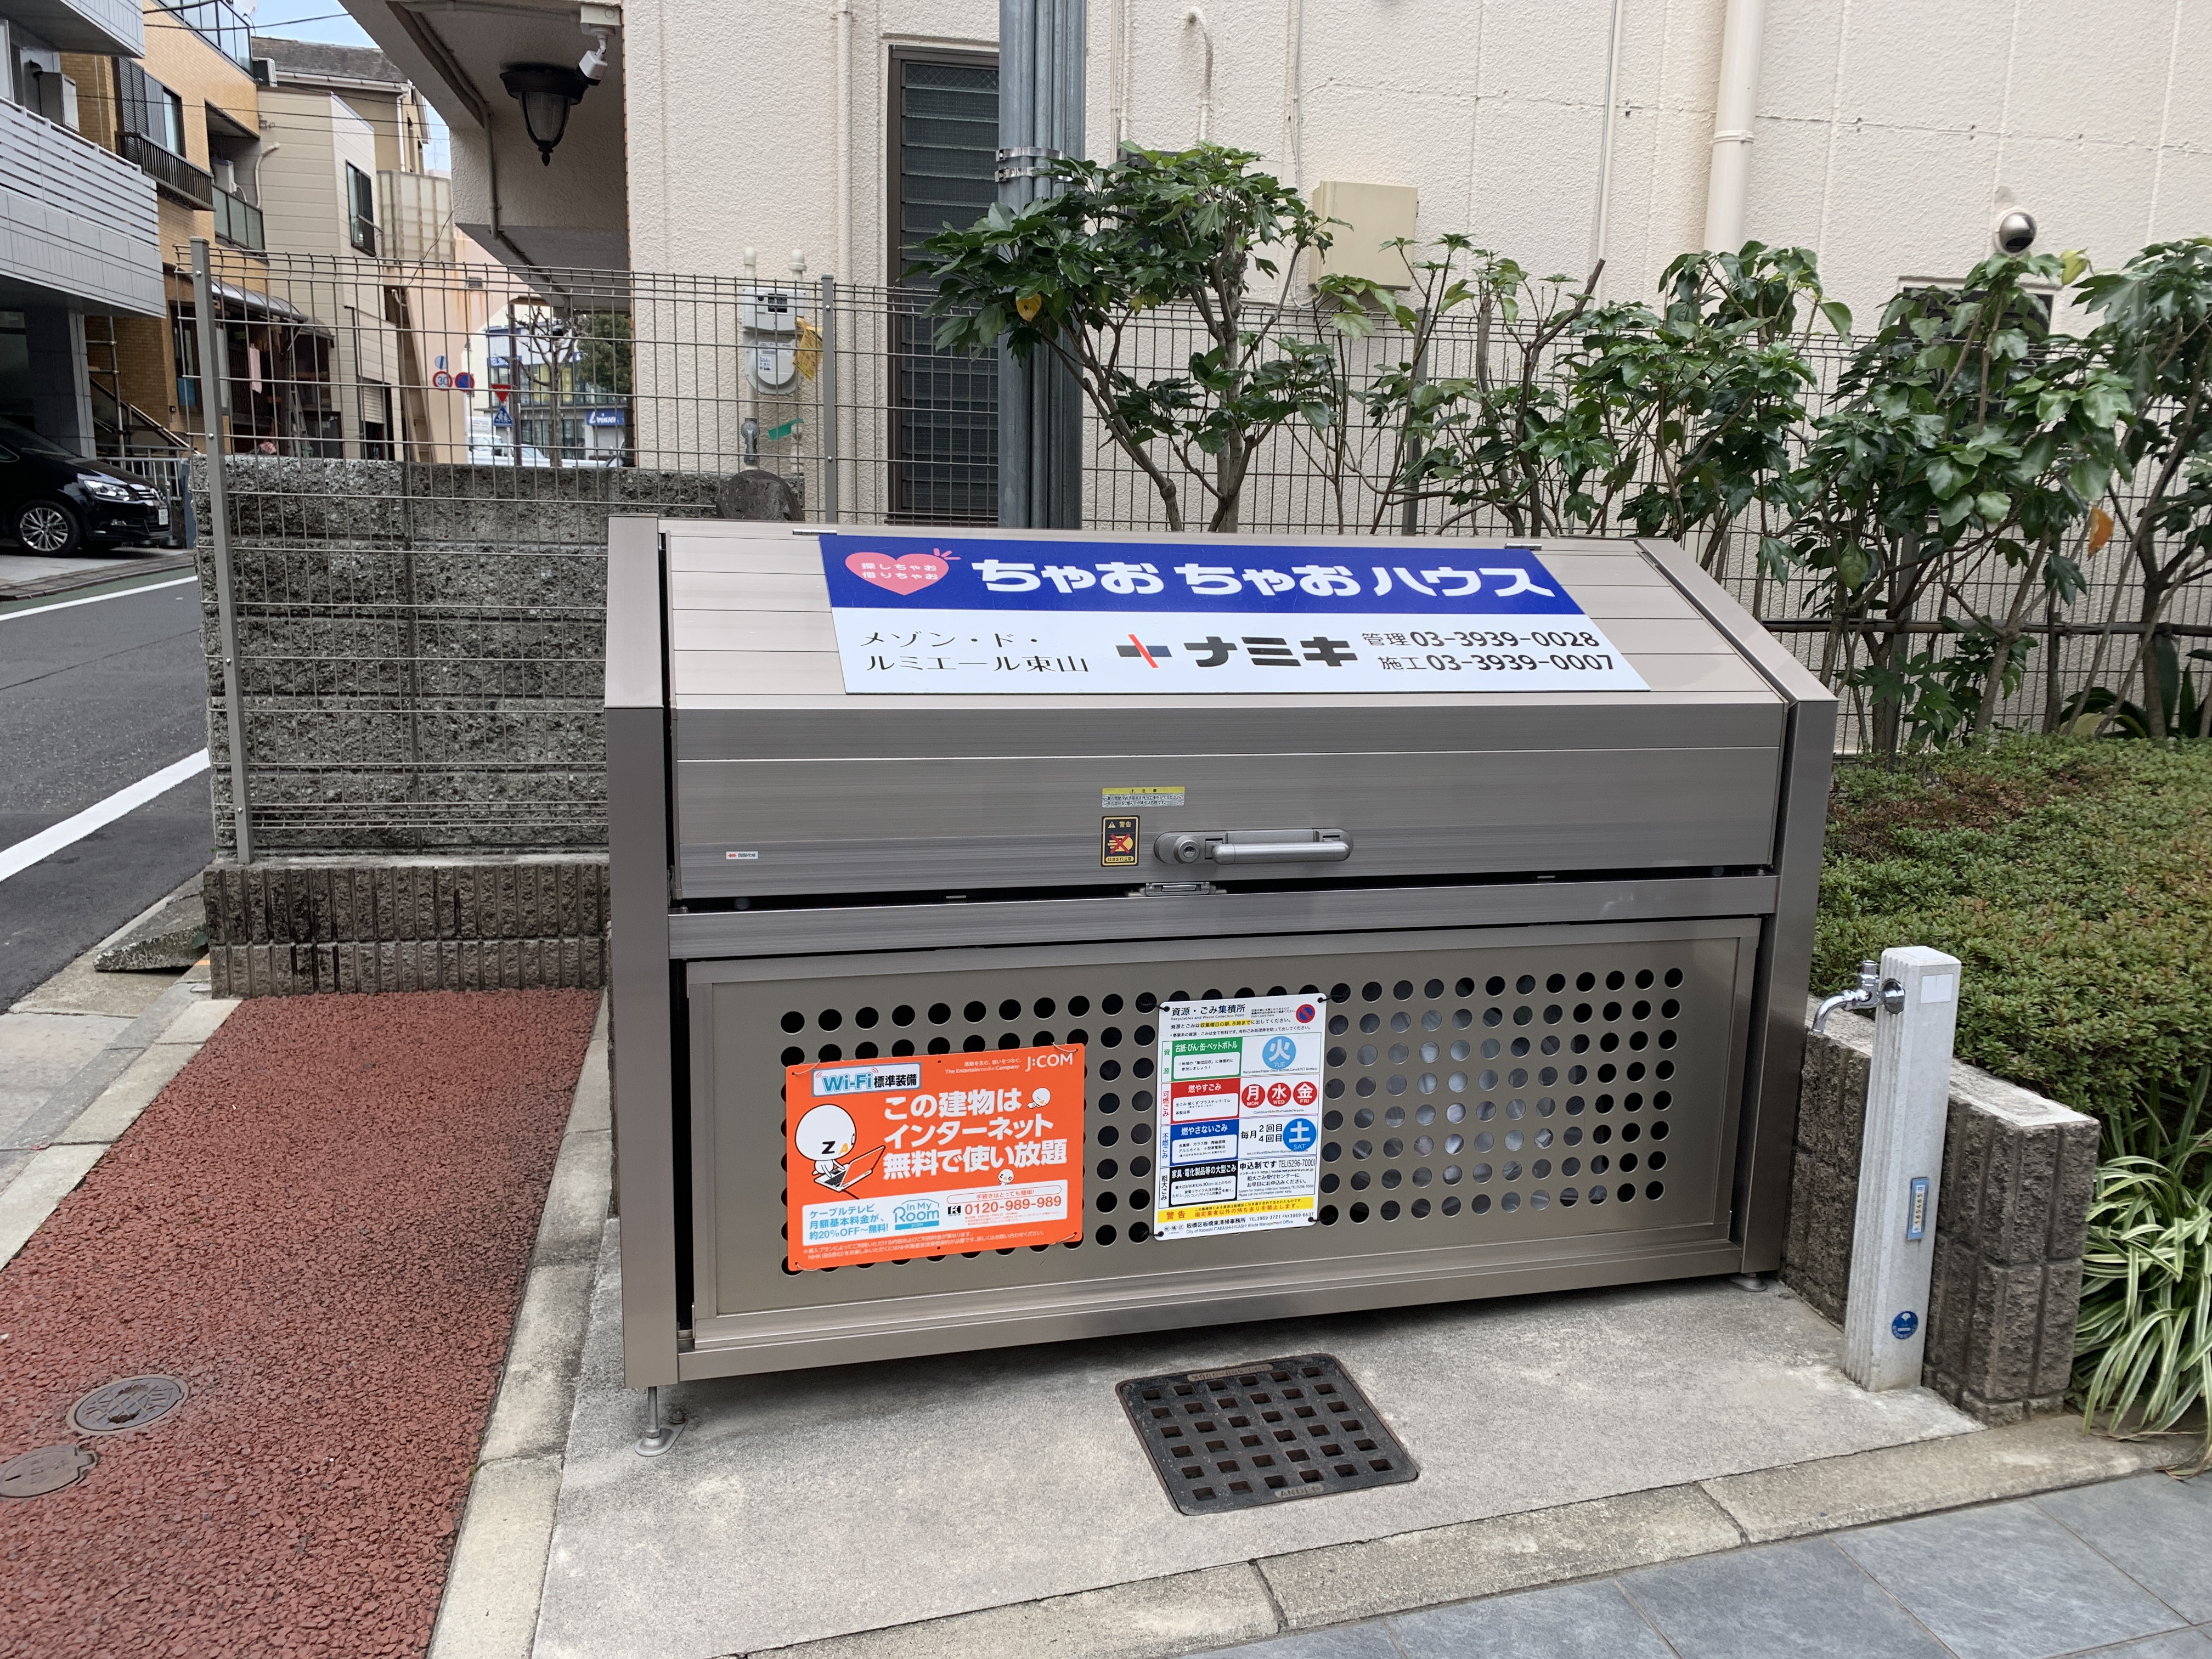 Garbage in Japan